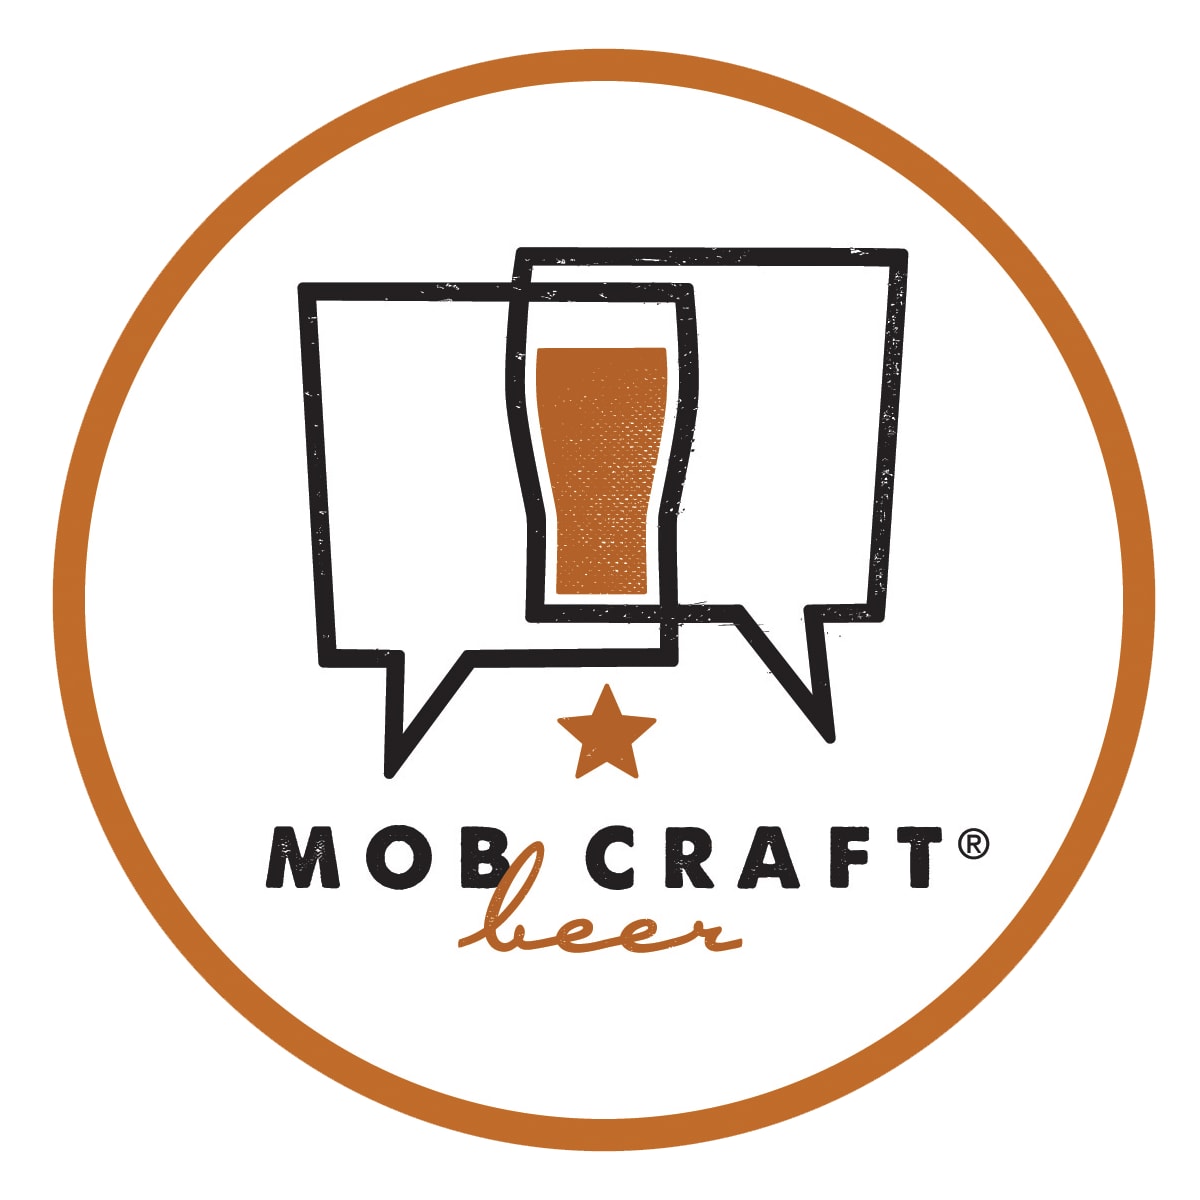 MobCraft Beer logo